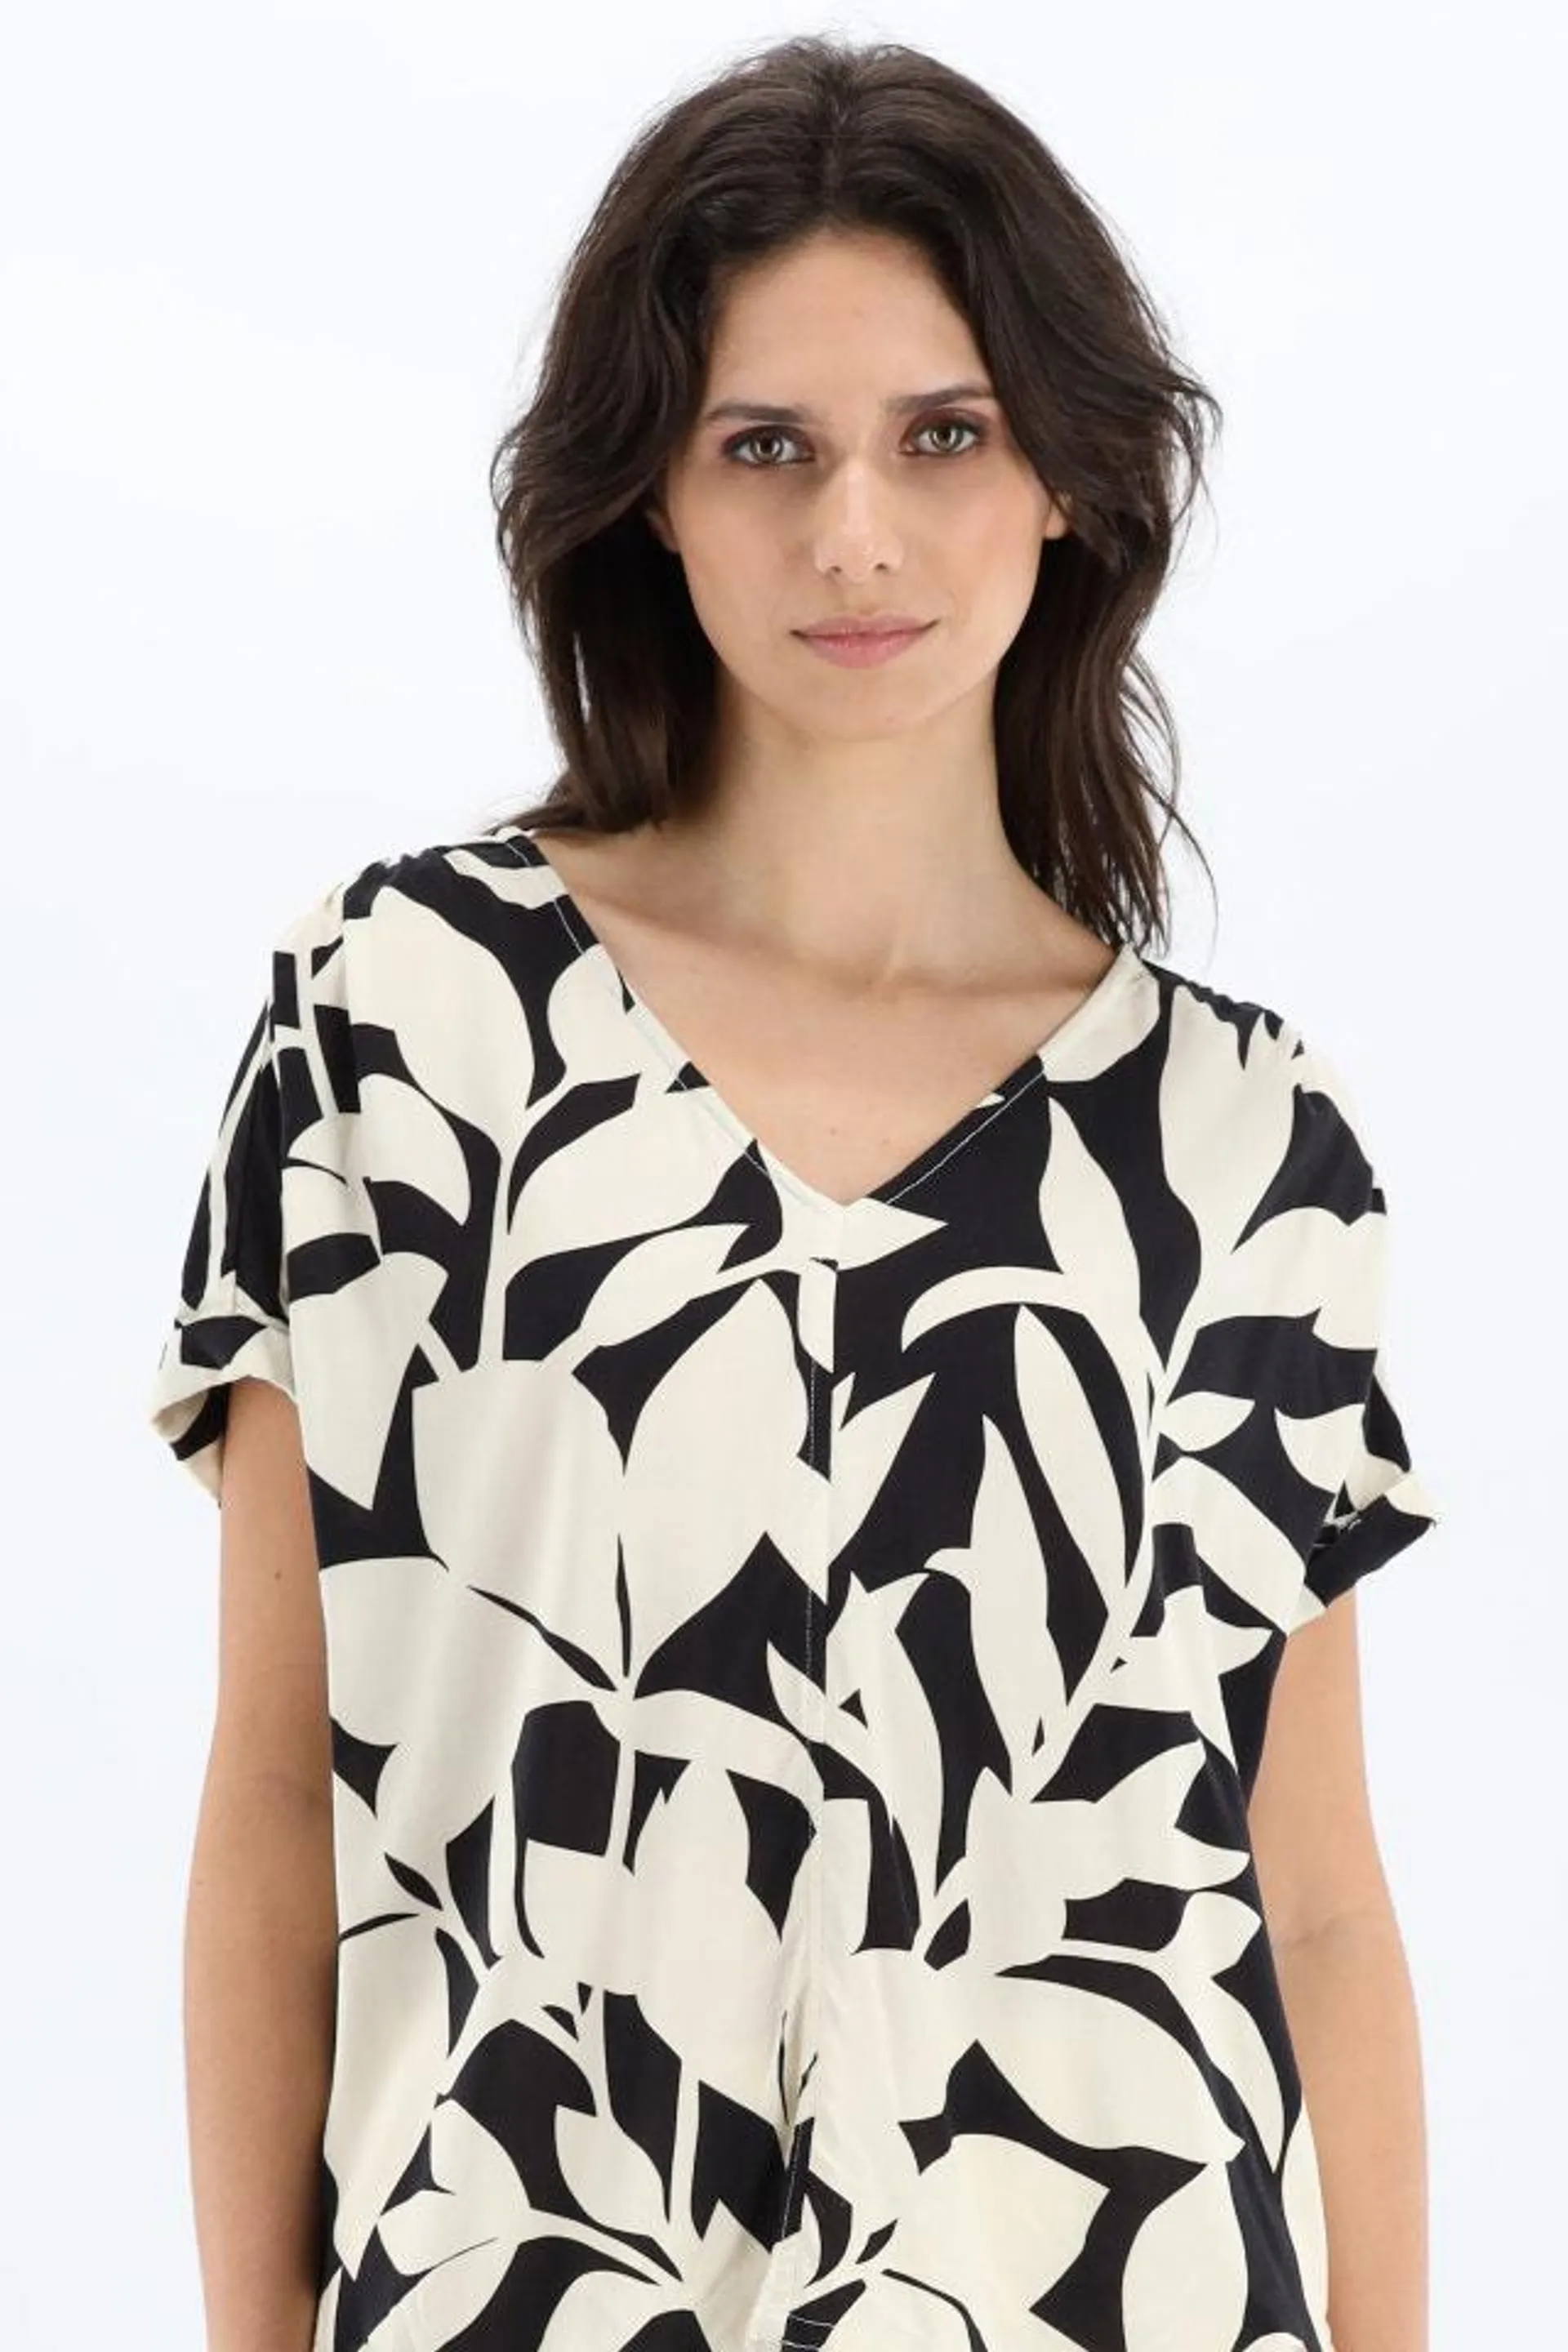 Zwart/witte blouse met blaadjes print